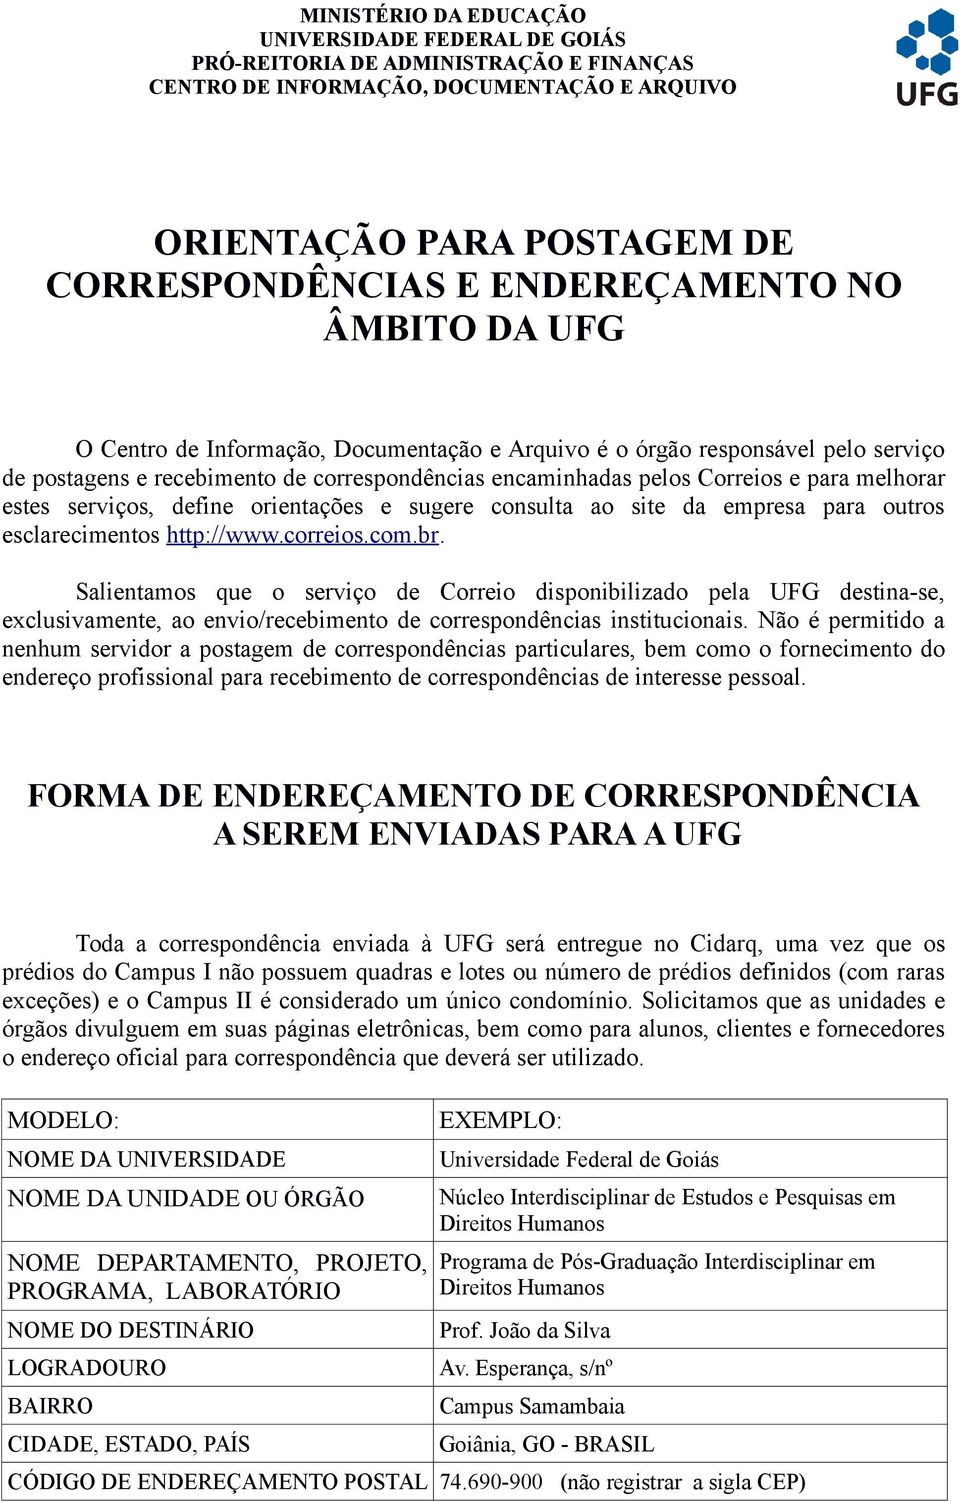 serviços, define orientações e sugere consulta ao site da empresa para outros esclarecimentos http://www.correios.com.br.